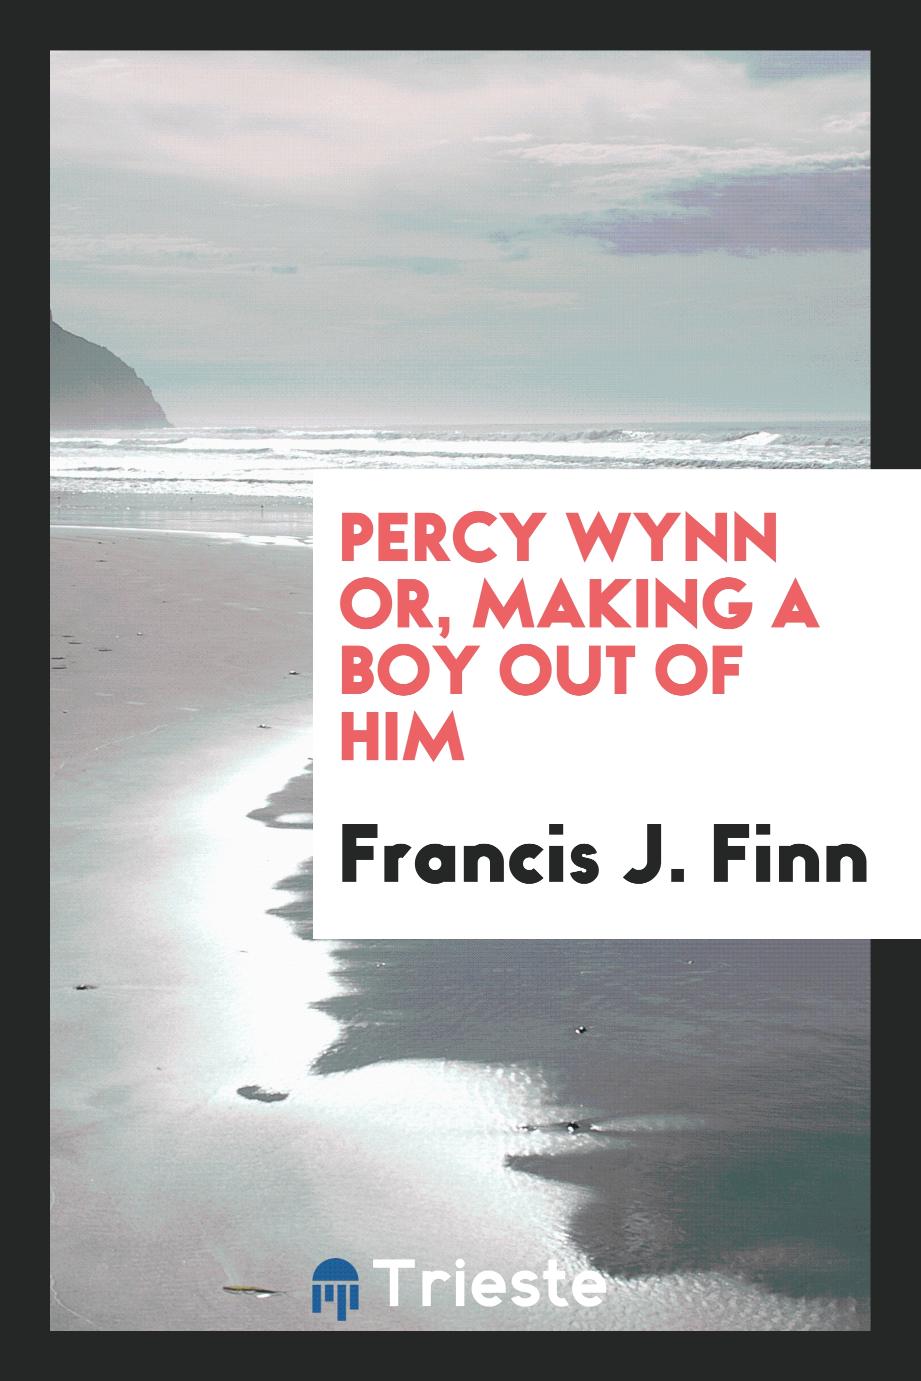 Percy Wynn or, making a boy out of him